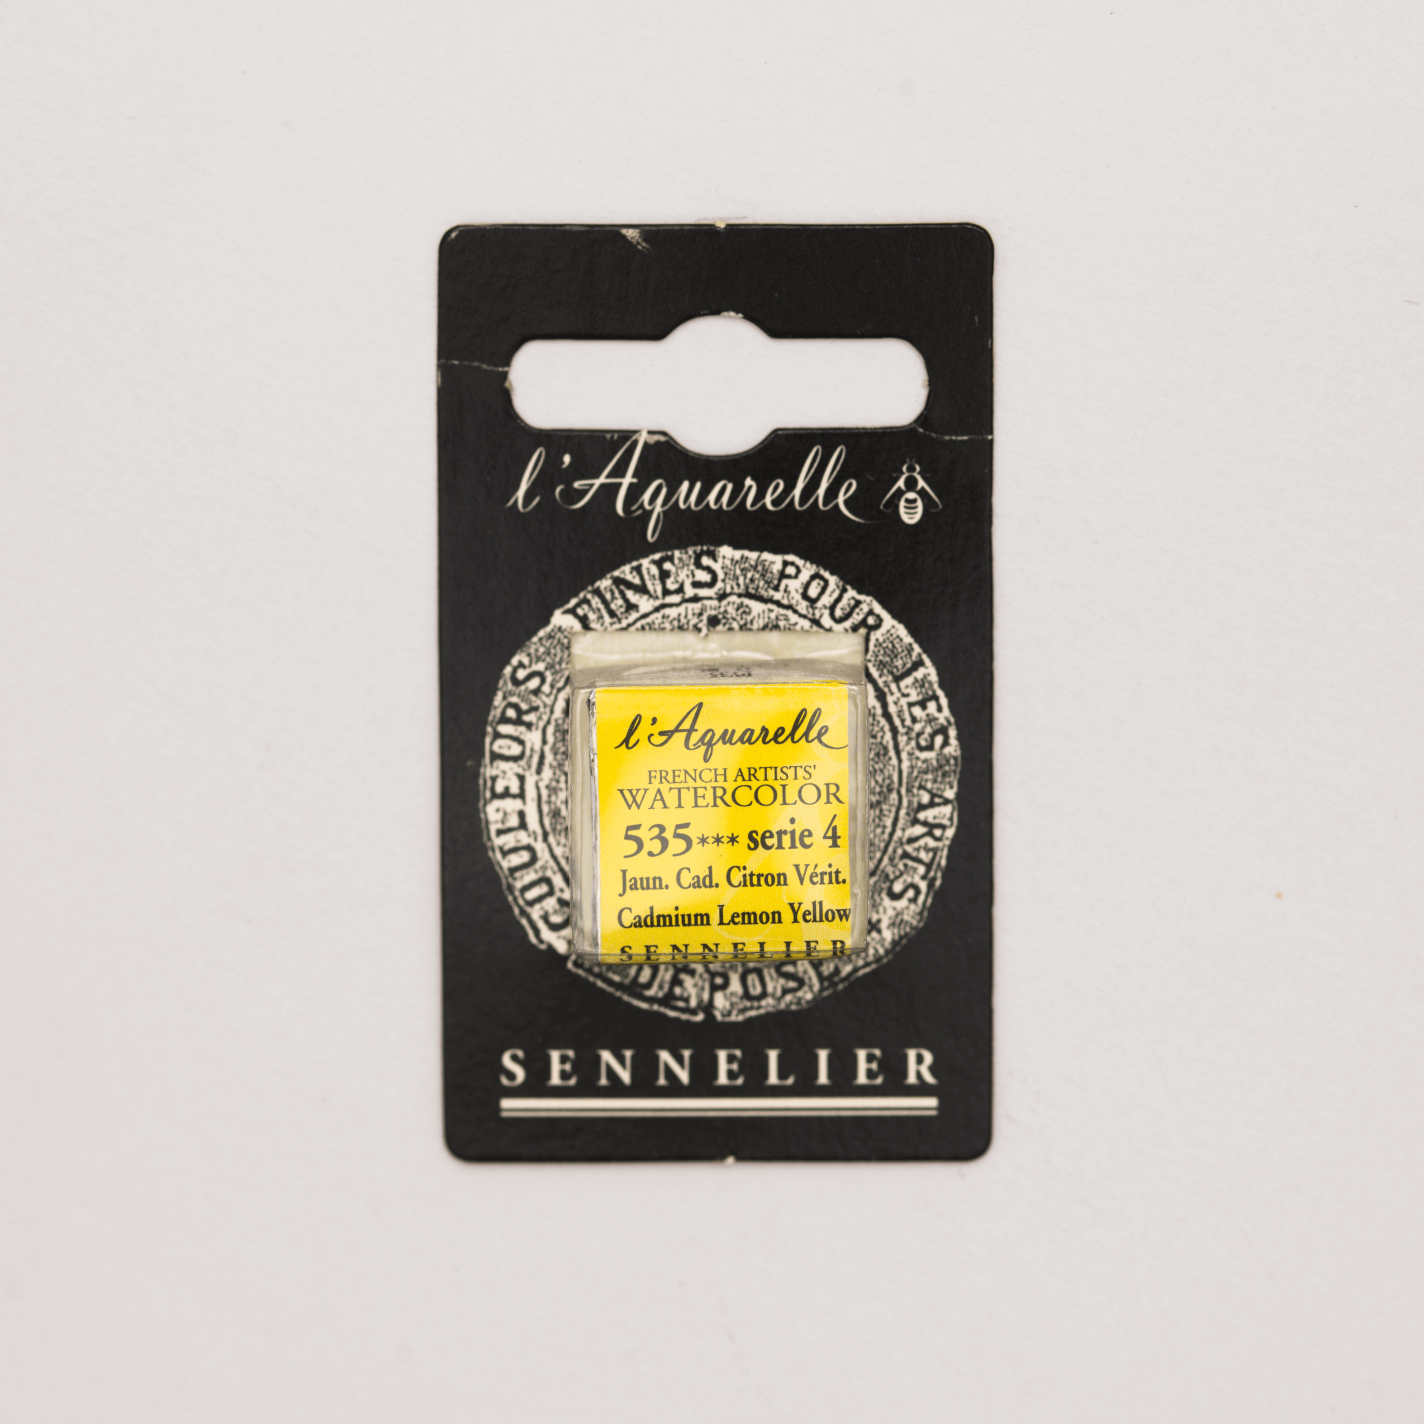 Sennelier Aquarelle pans 1/2 pan Cadmium Lemon Yellow